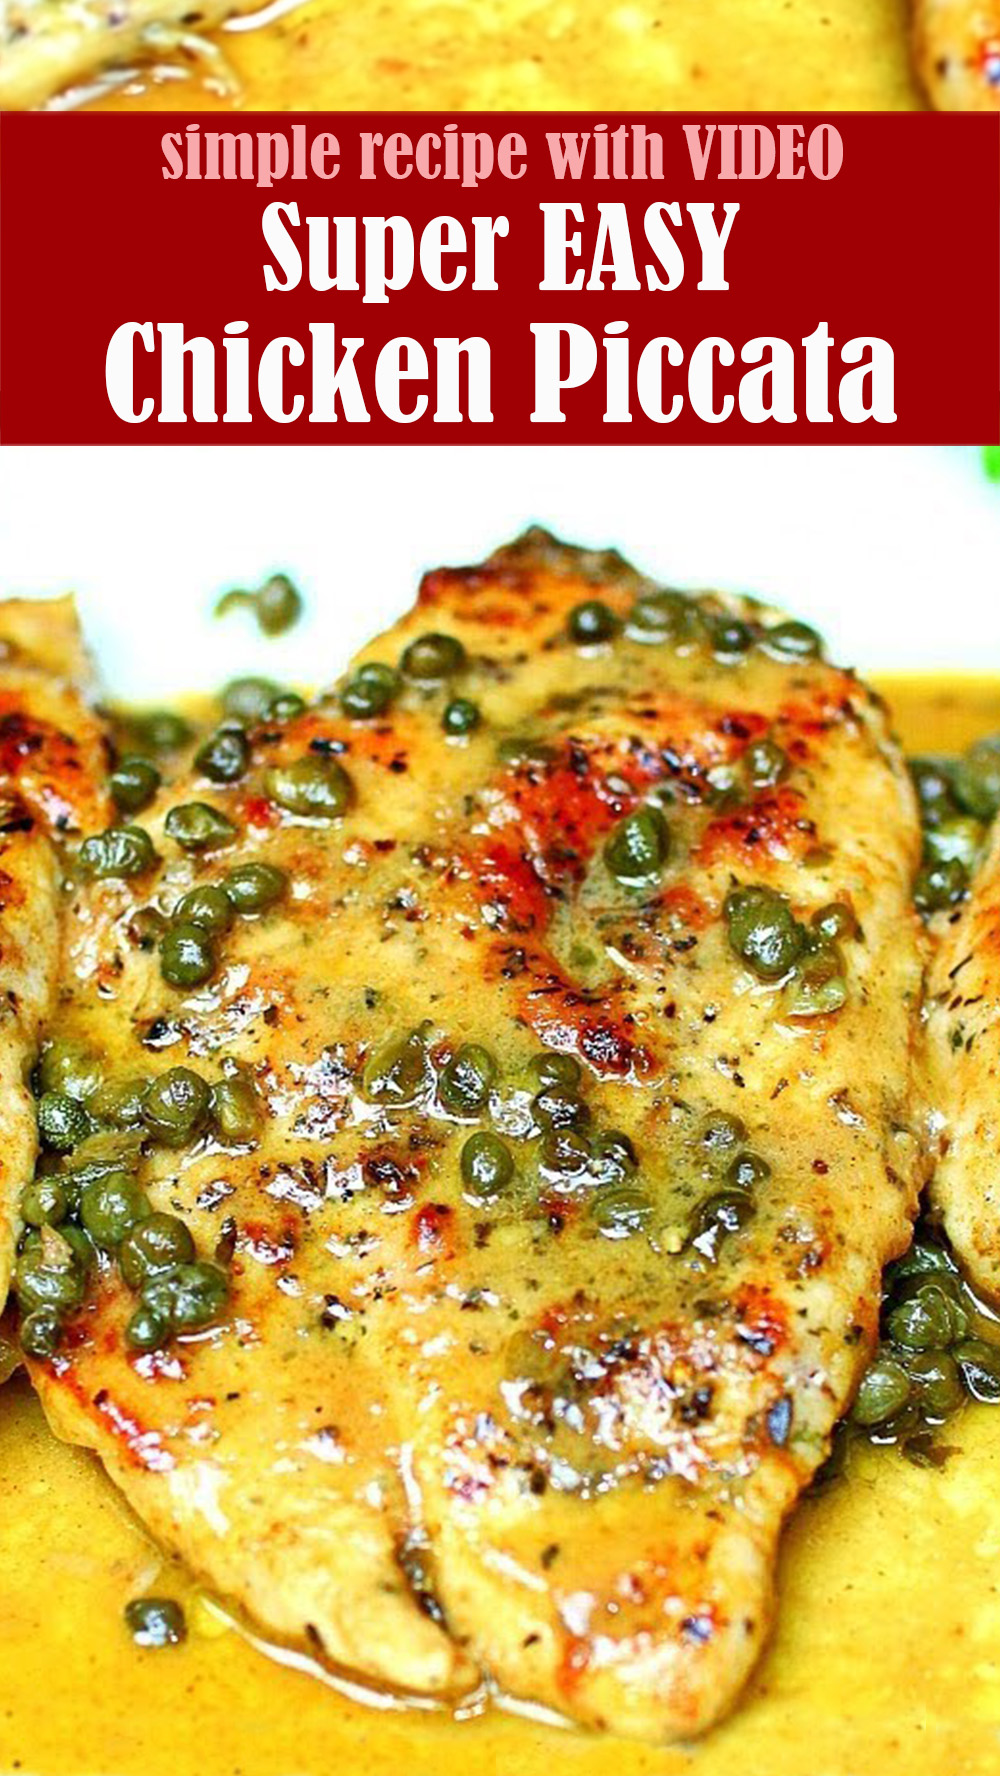 Super EASY Chicken Piccata Recipe